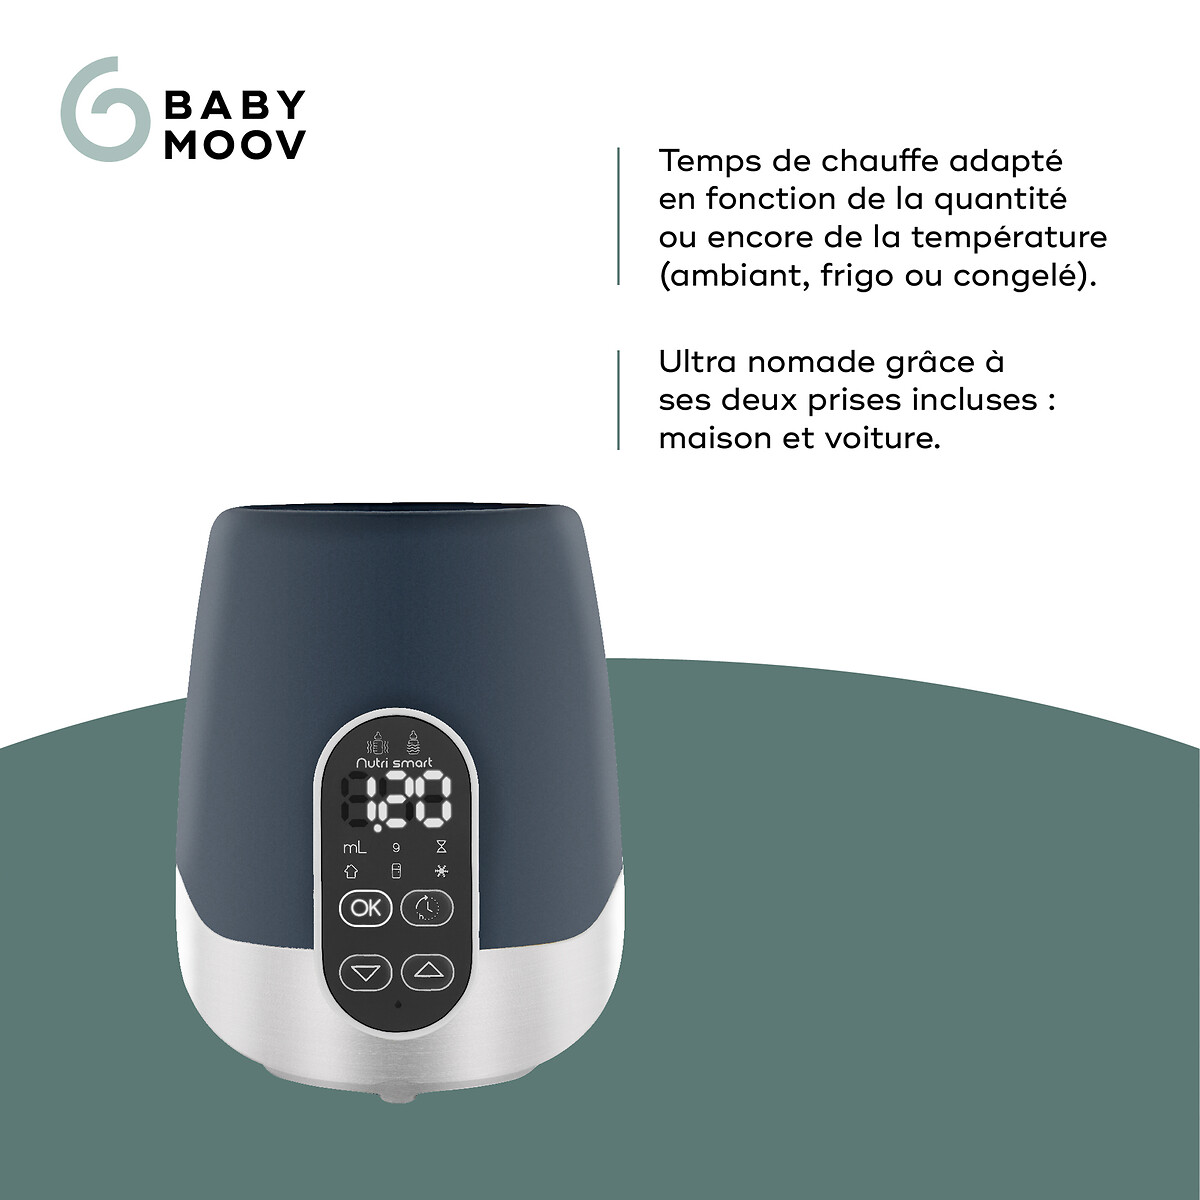 Aquecedor de mamadeiras digital para carro nutrismart (banho-maria / vapor)  - Prenatal